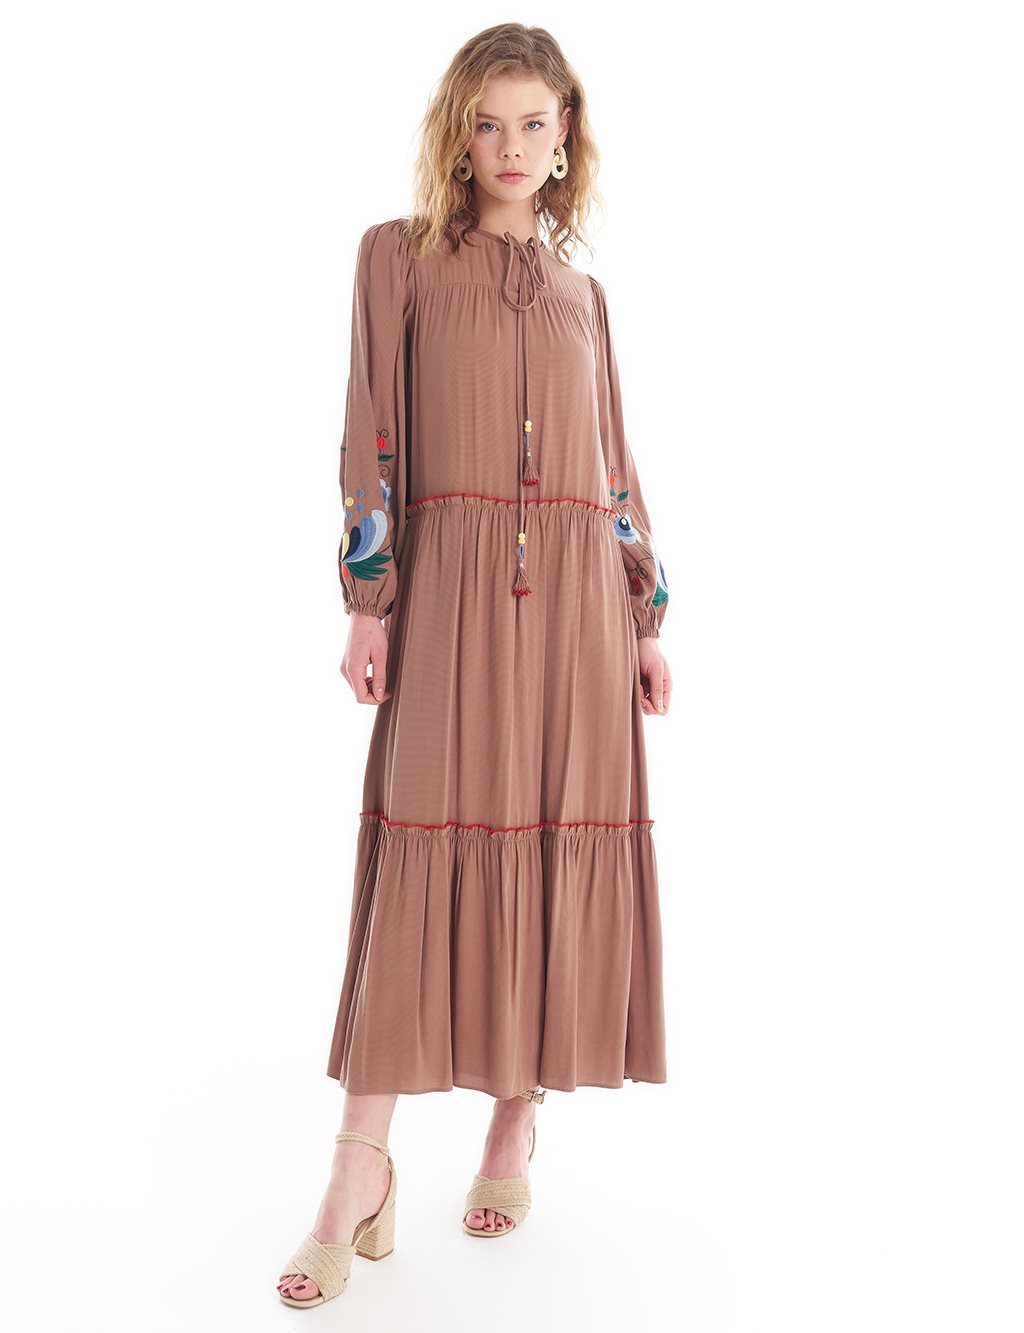 Многослойное платье с вышивкой и кисточками Молочно-коричневый KYR